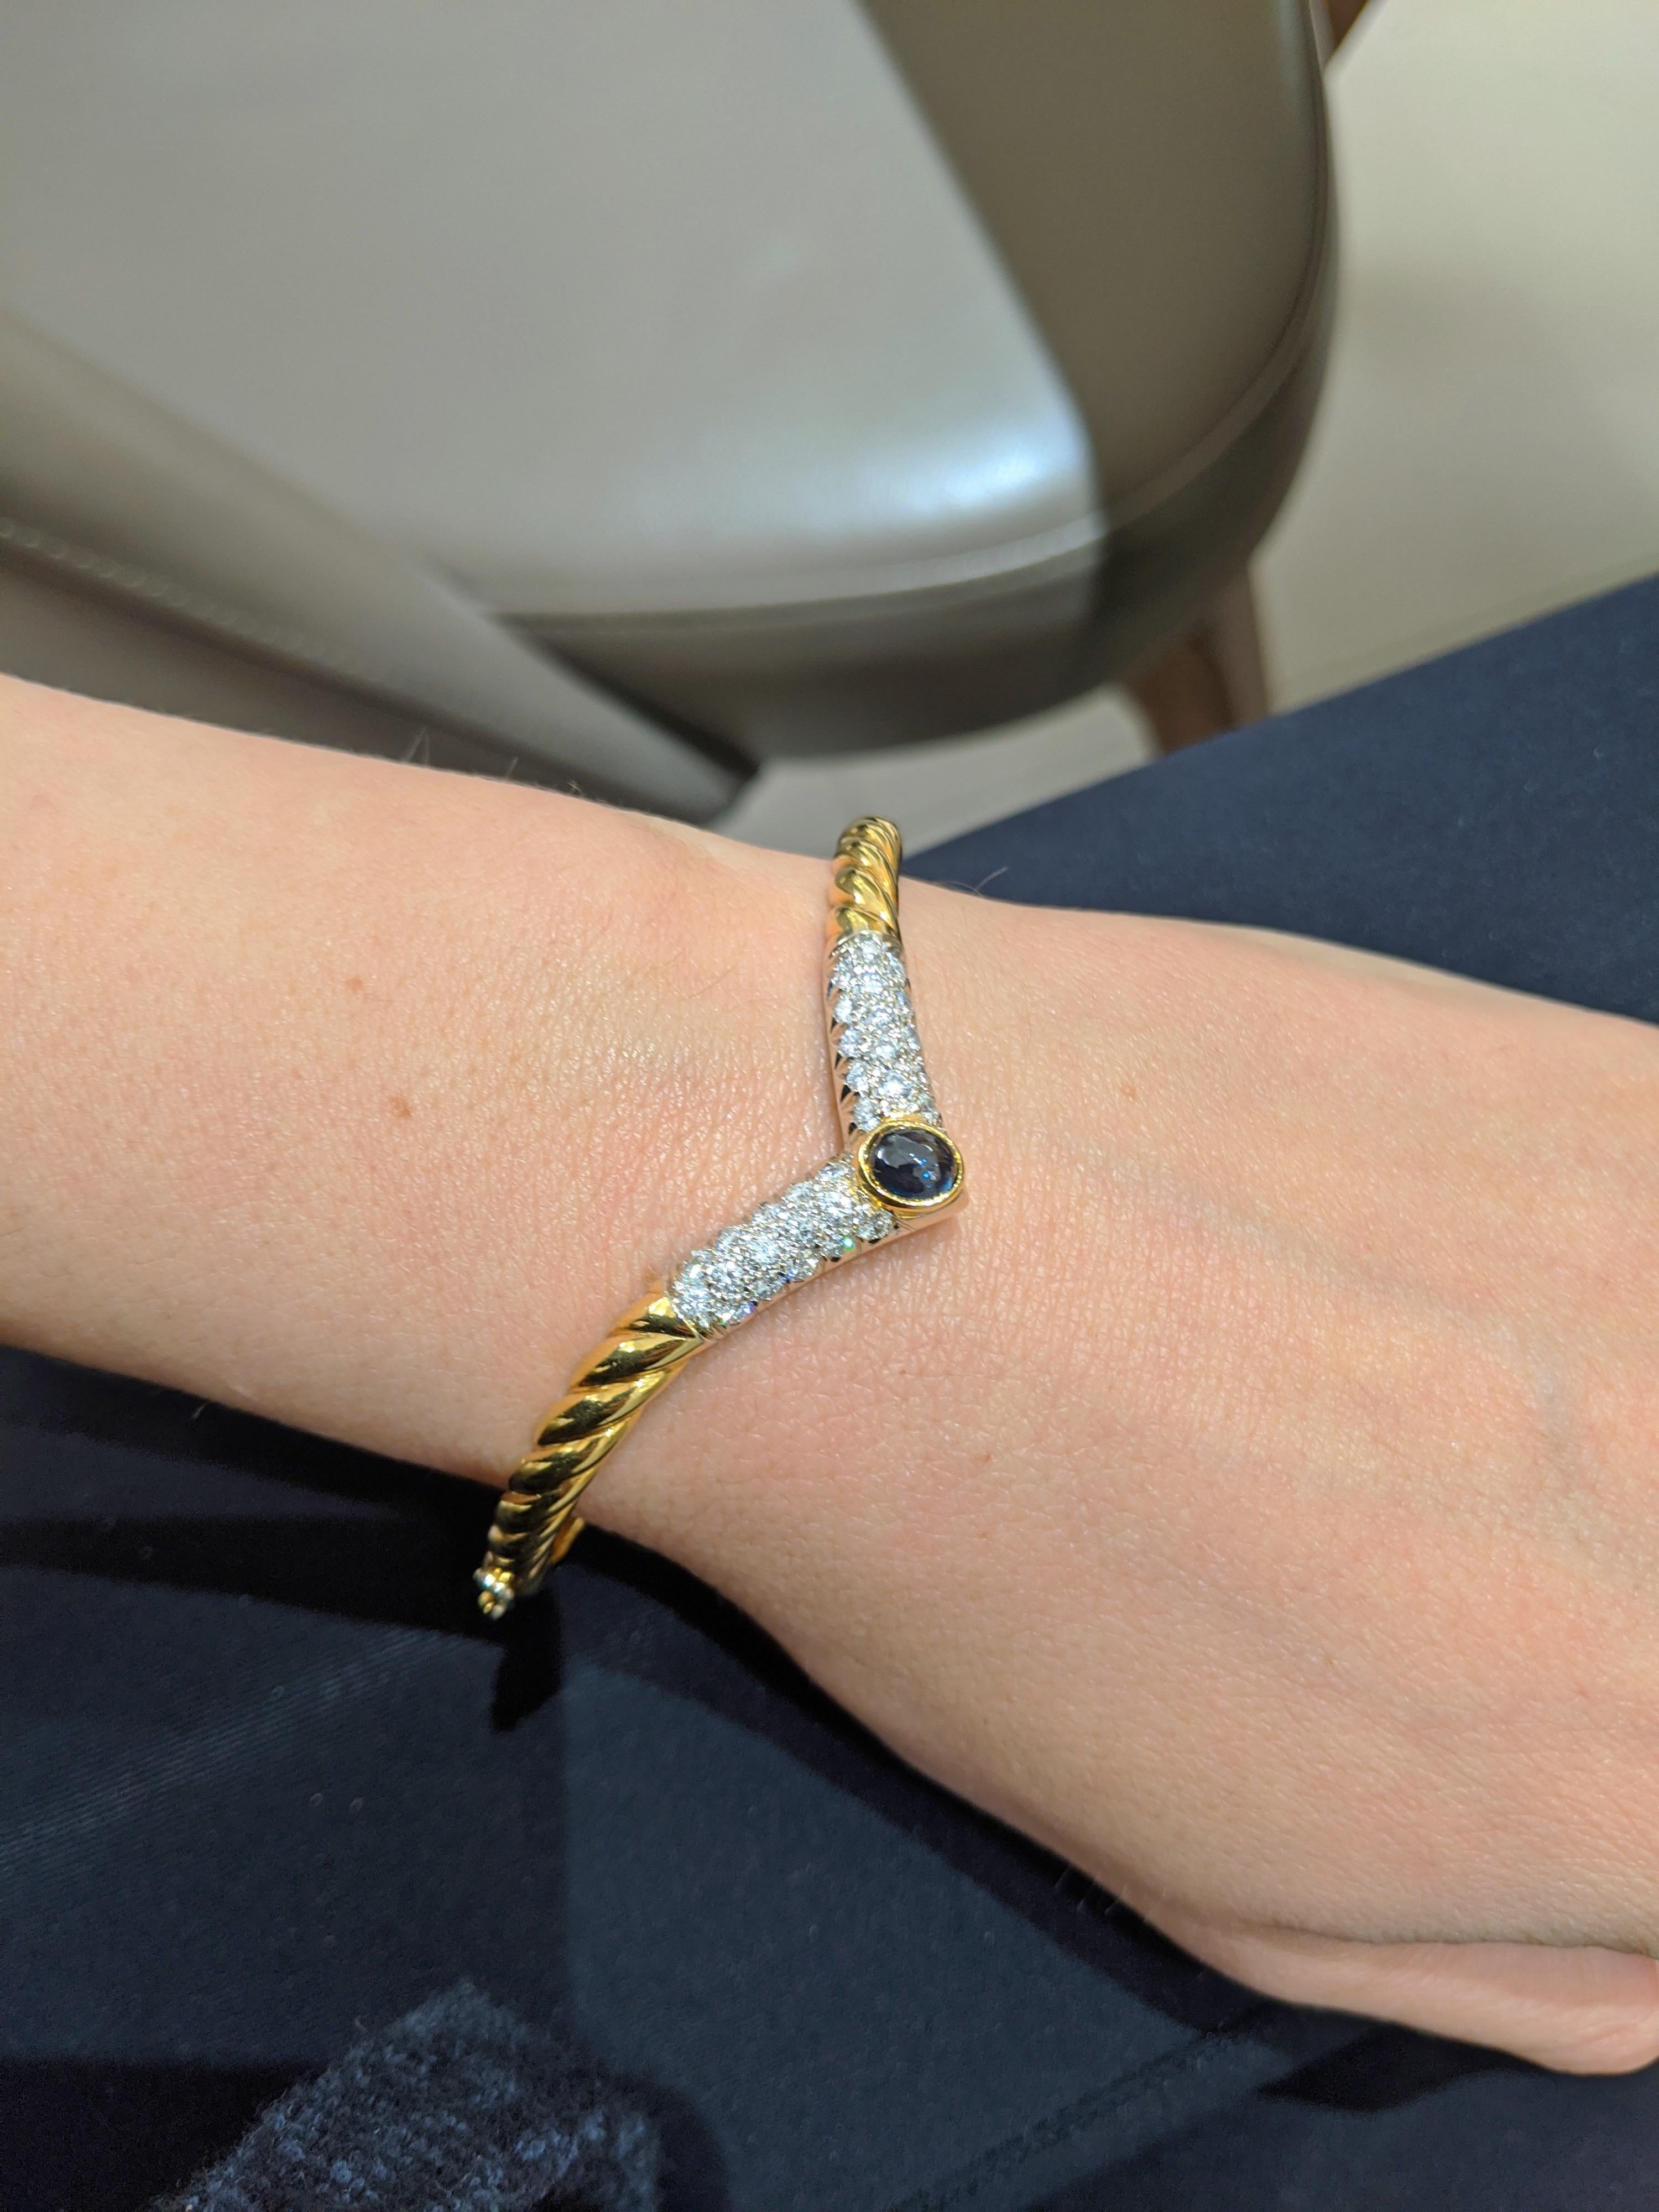 Dies ist eine schöne 18 Karat Gelbgold Armreif Armband. Das V-förmige Armband ist mit gepflasterten Diamanten und einem ovalen blauen Saphir mit Cabochon besetzt. Der Armreif misst 2 1/4